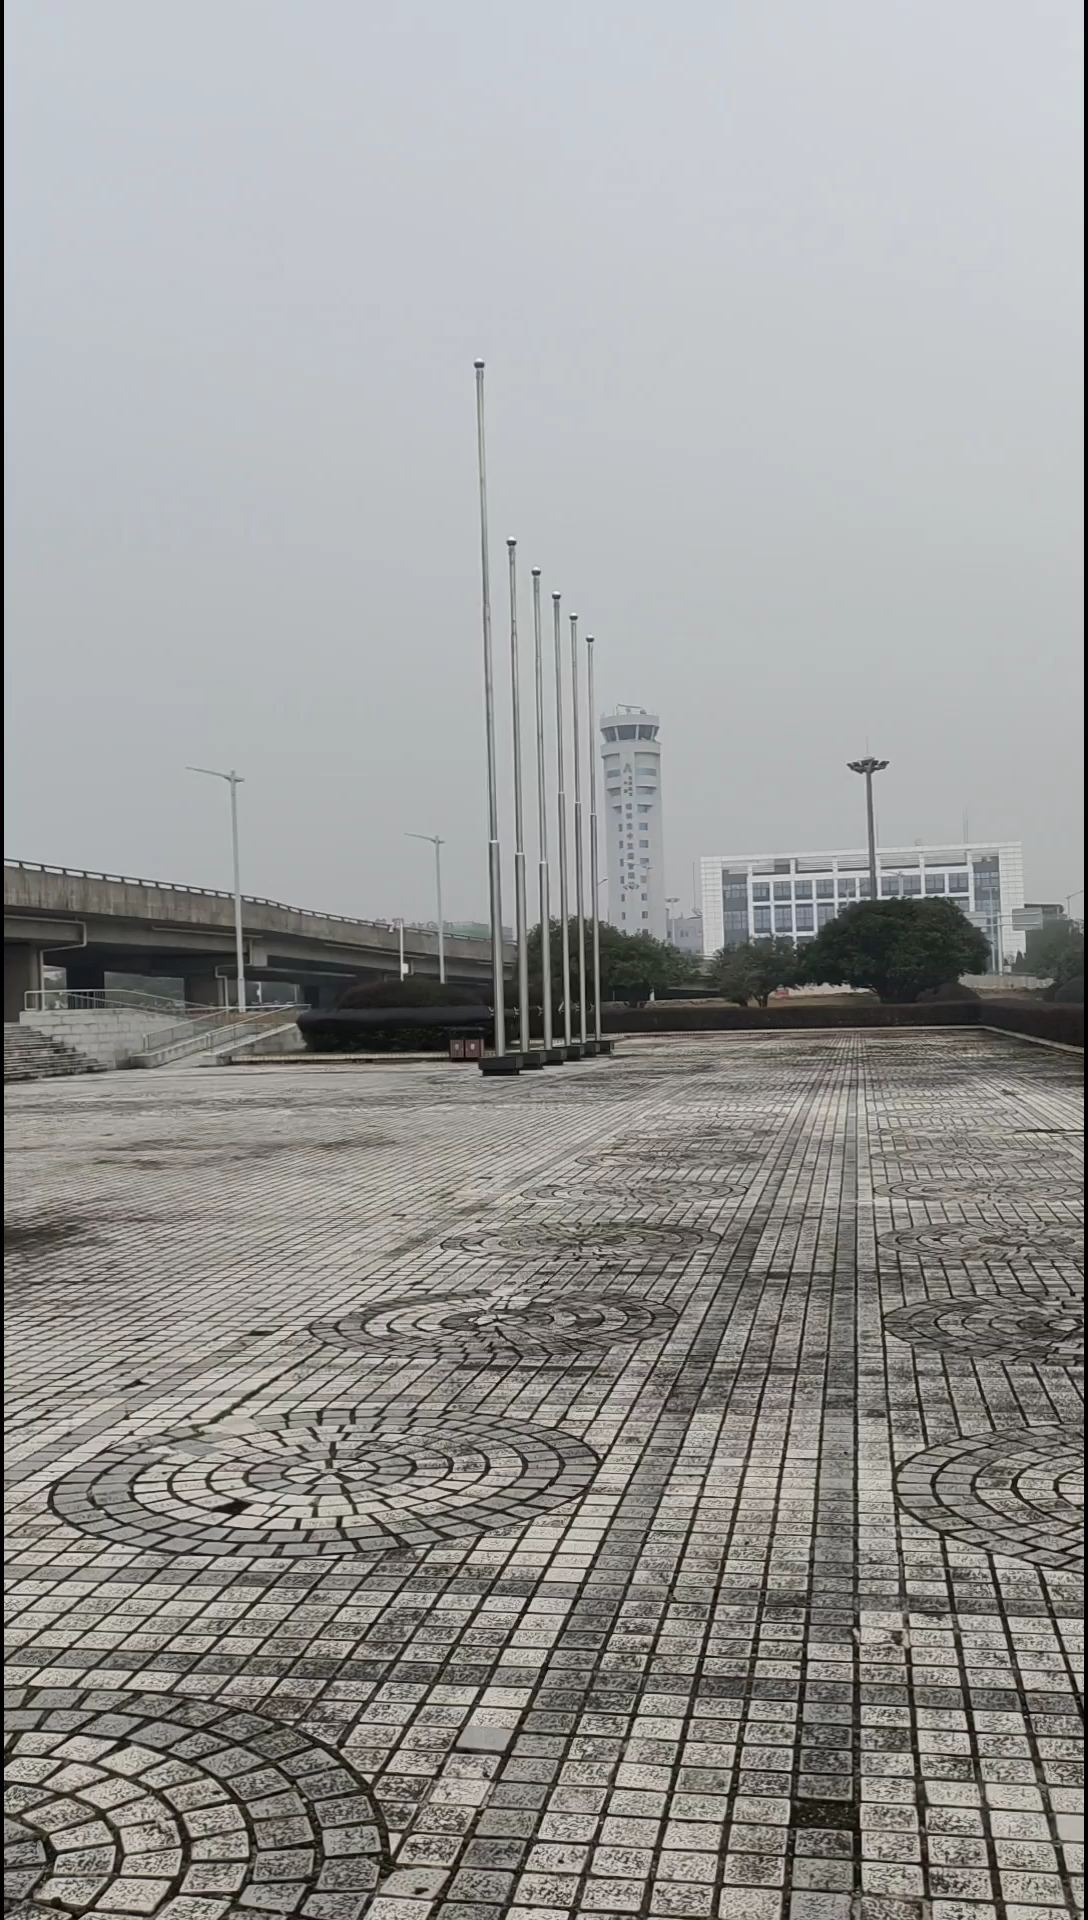 桂林两江机场